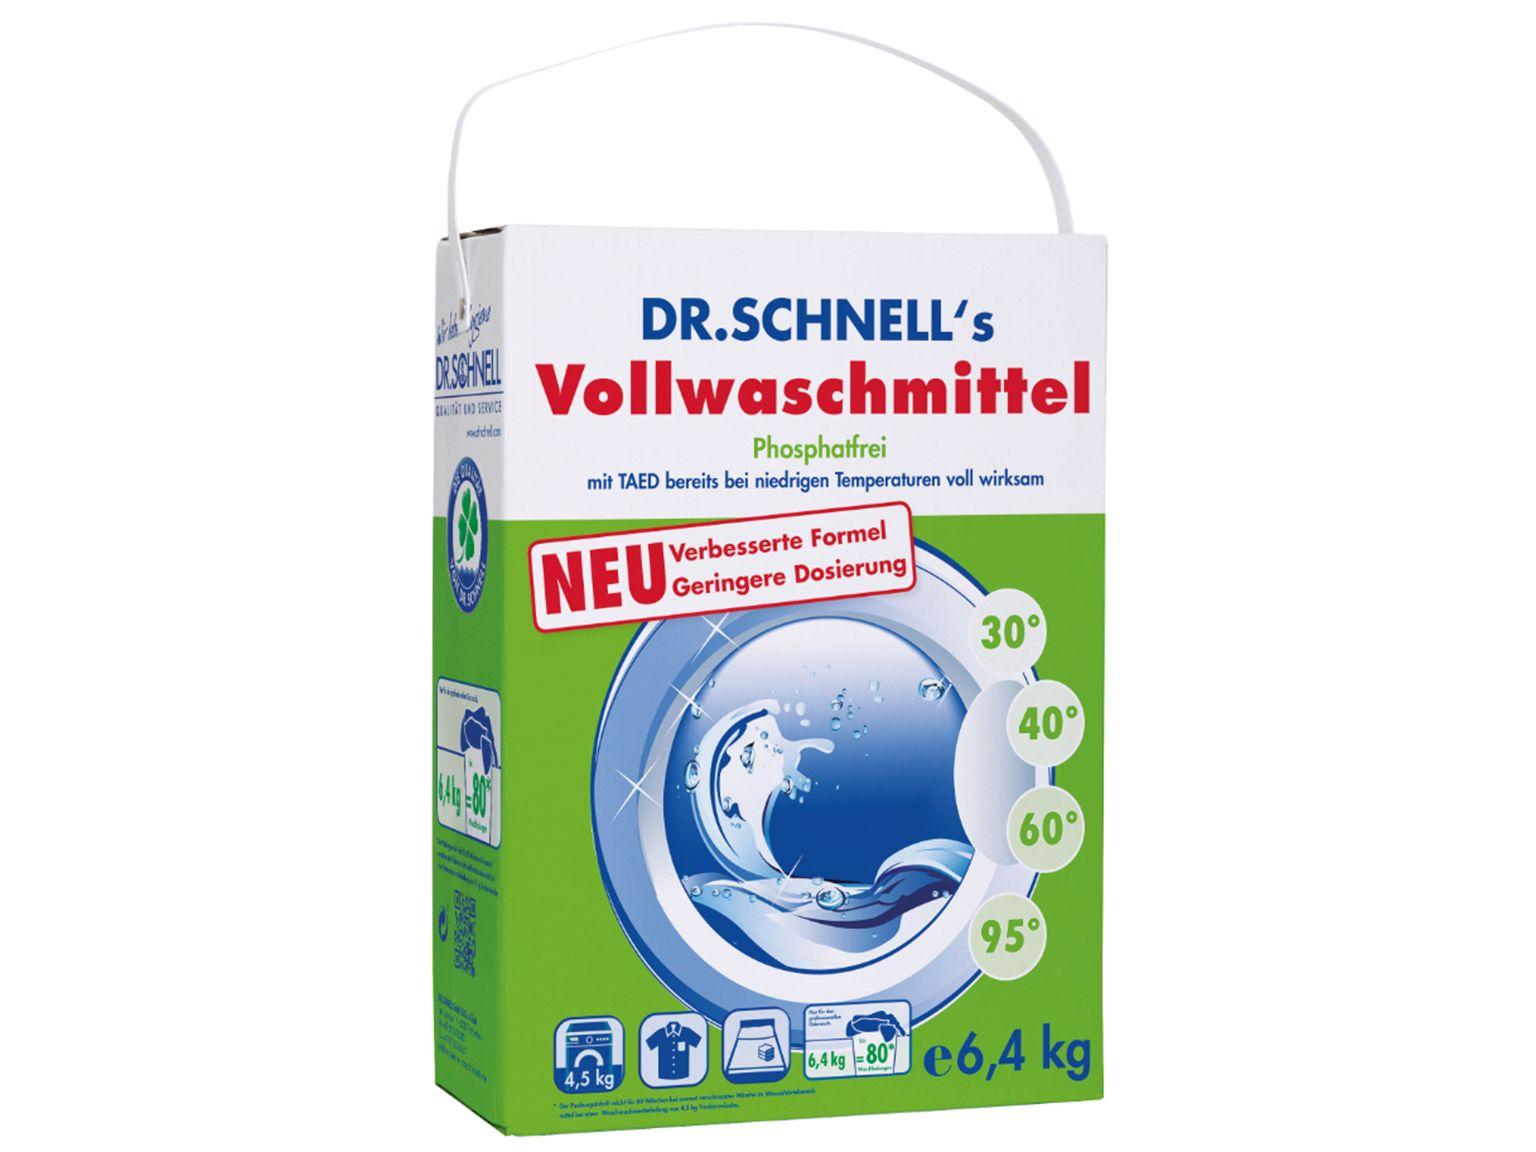 REINIGUNGSMITTEL DR.SCHNELL  Vollwaschmittel Dr. Schnell, 6.4 kg